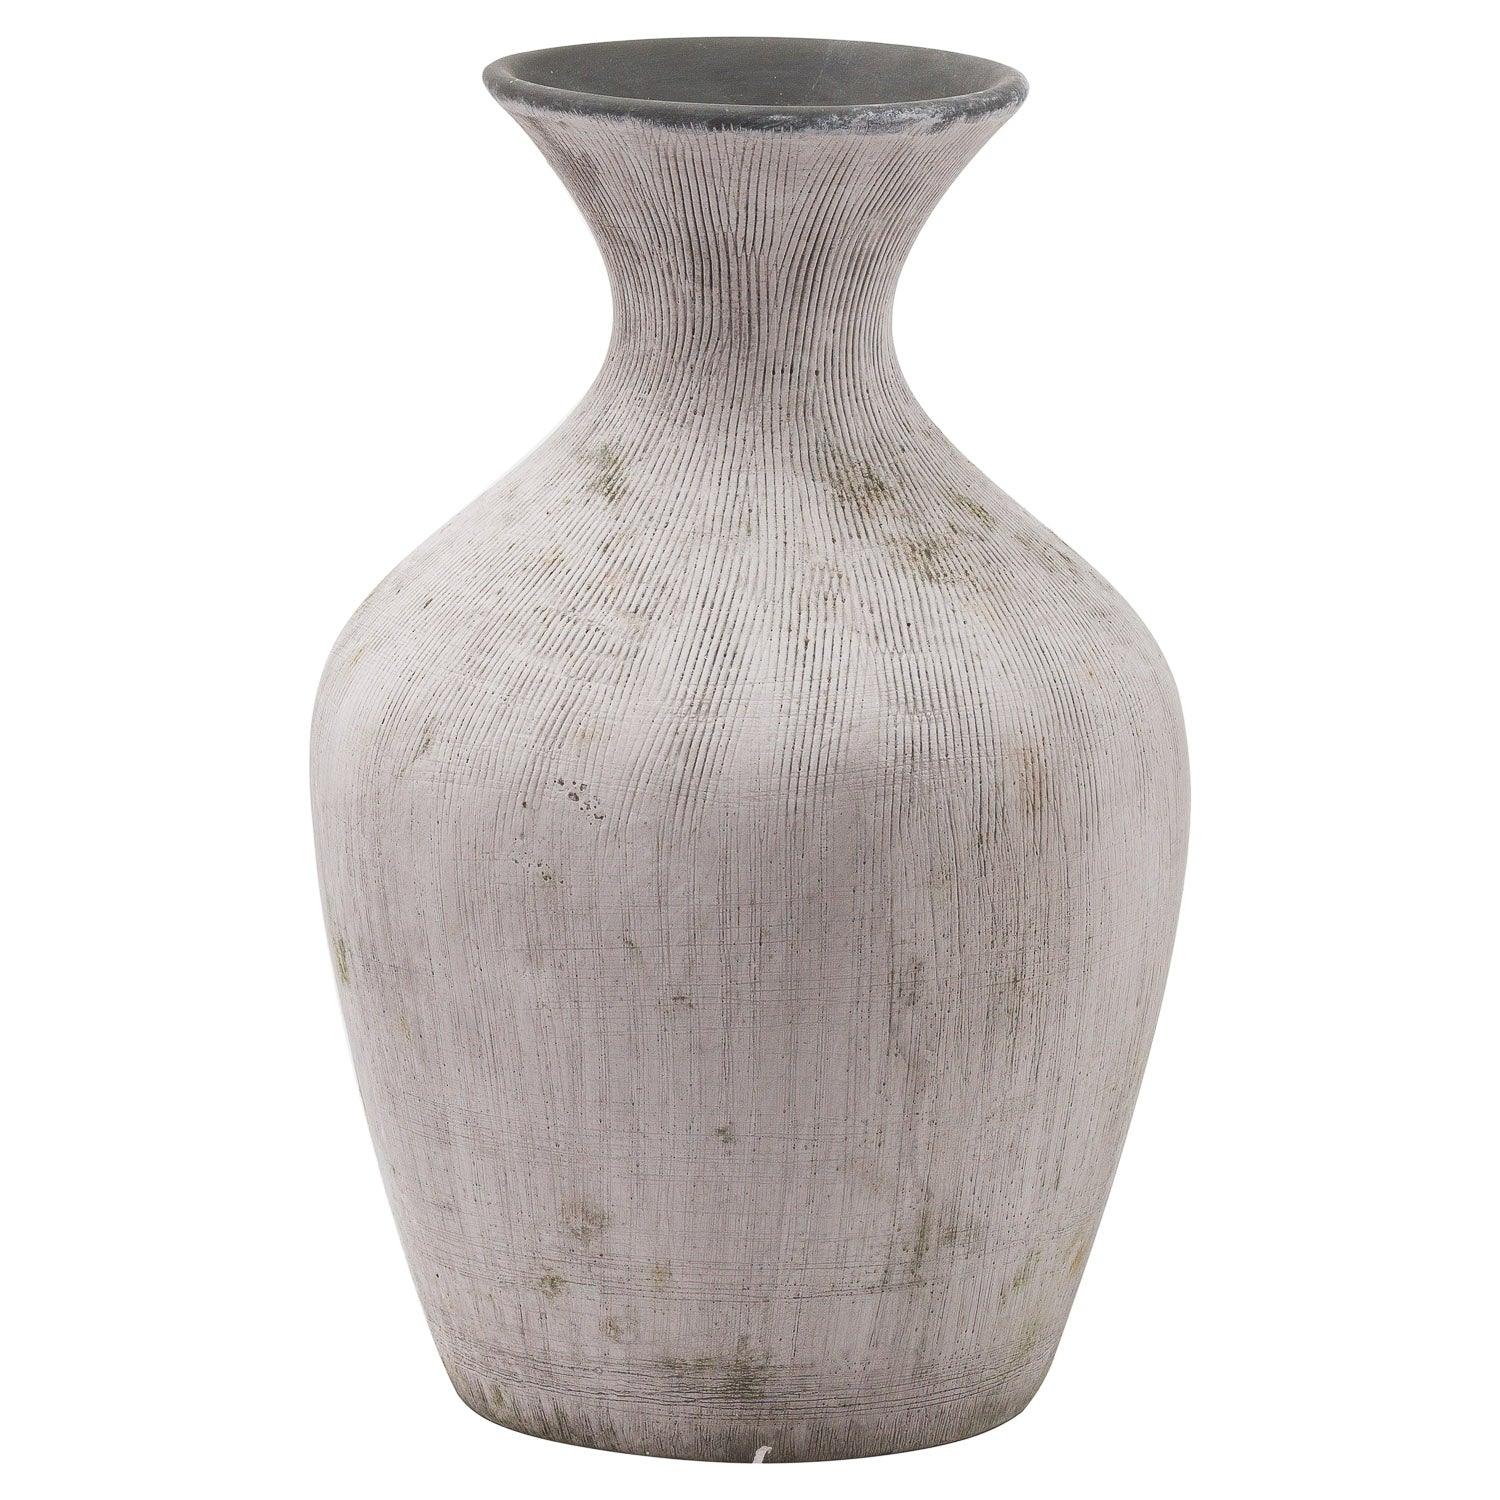 View Bloomville Ellipse Stone Vase information